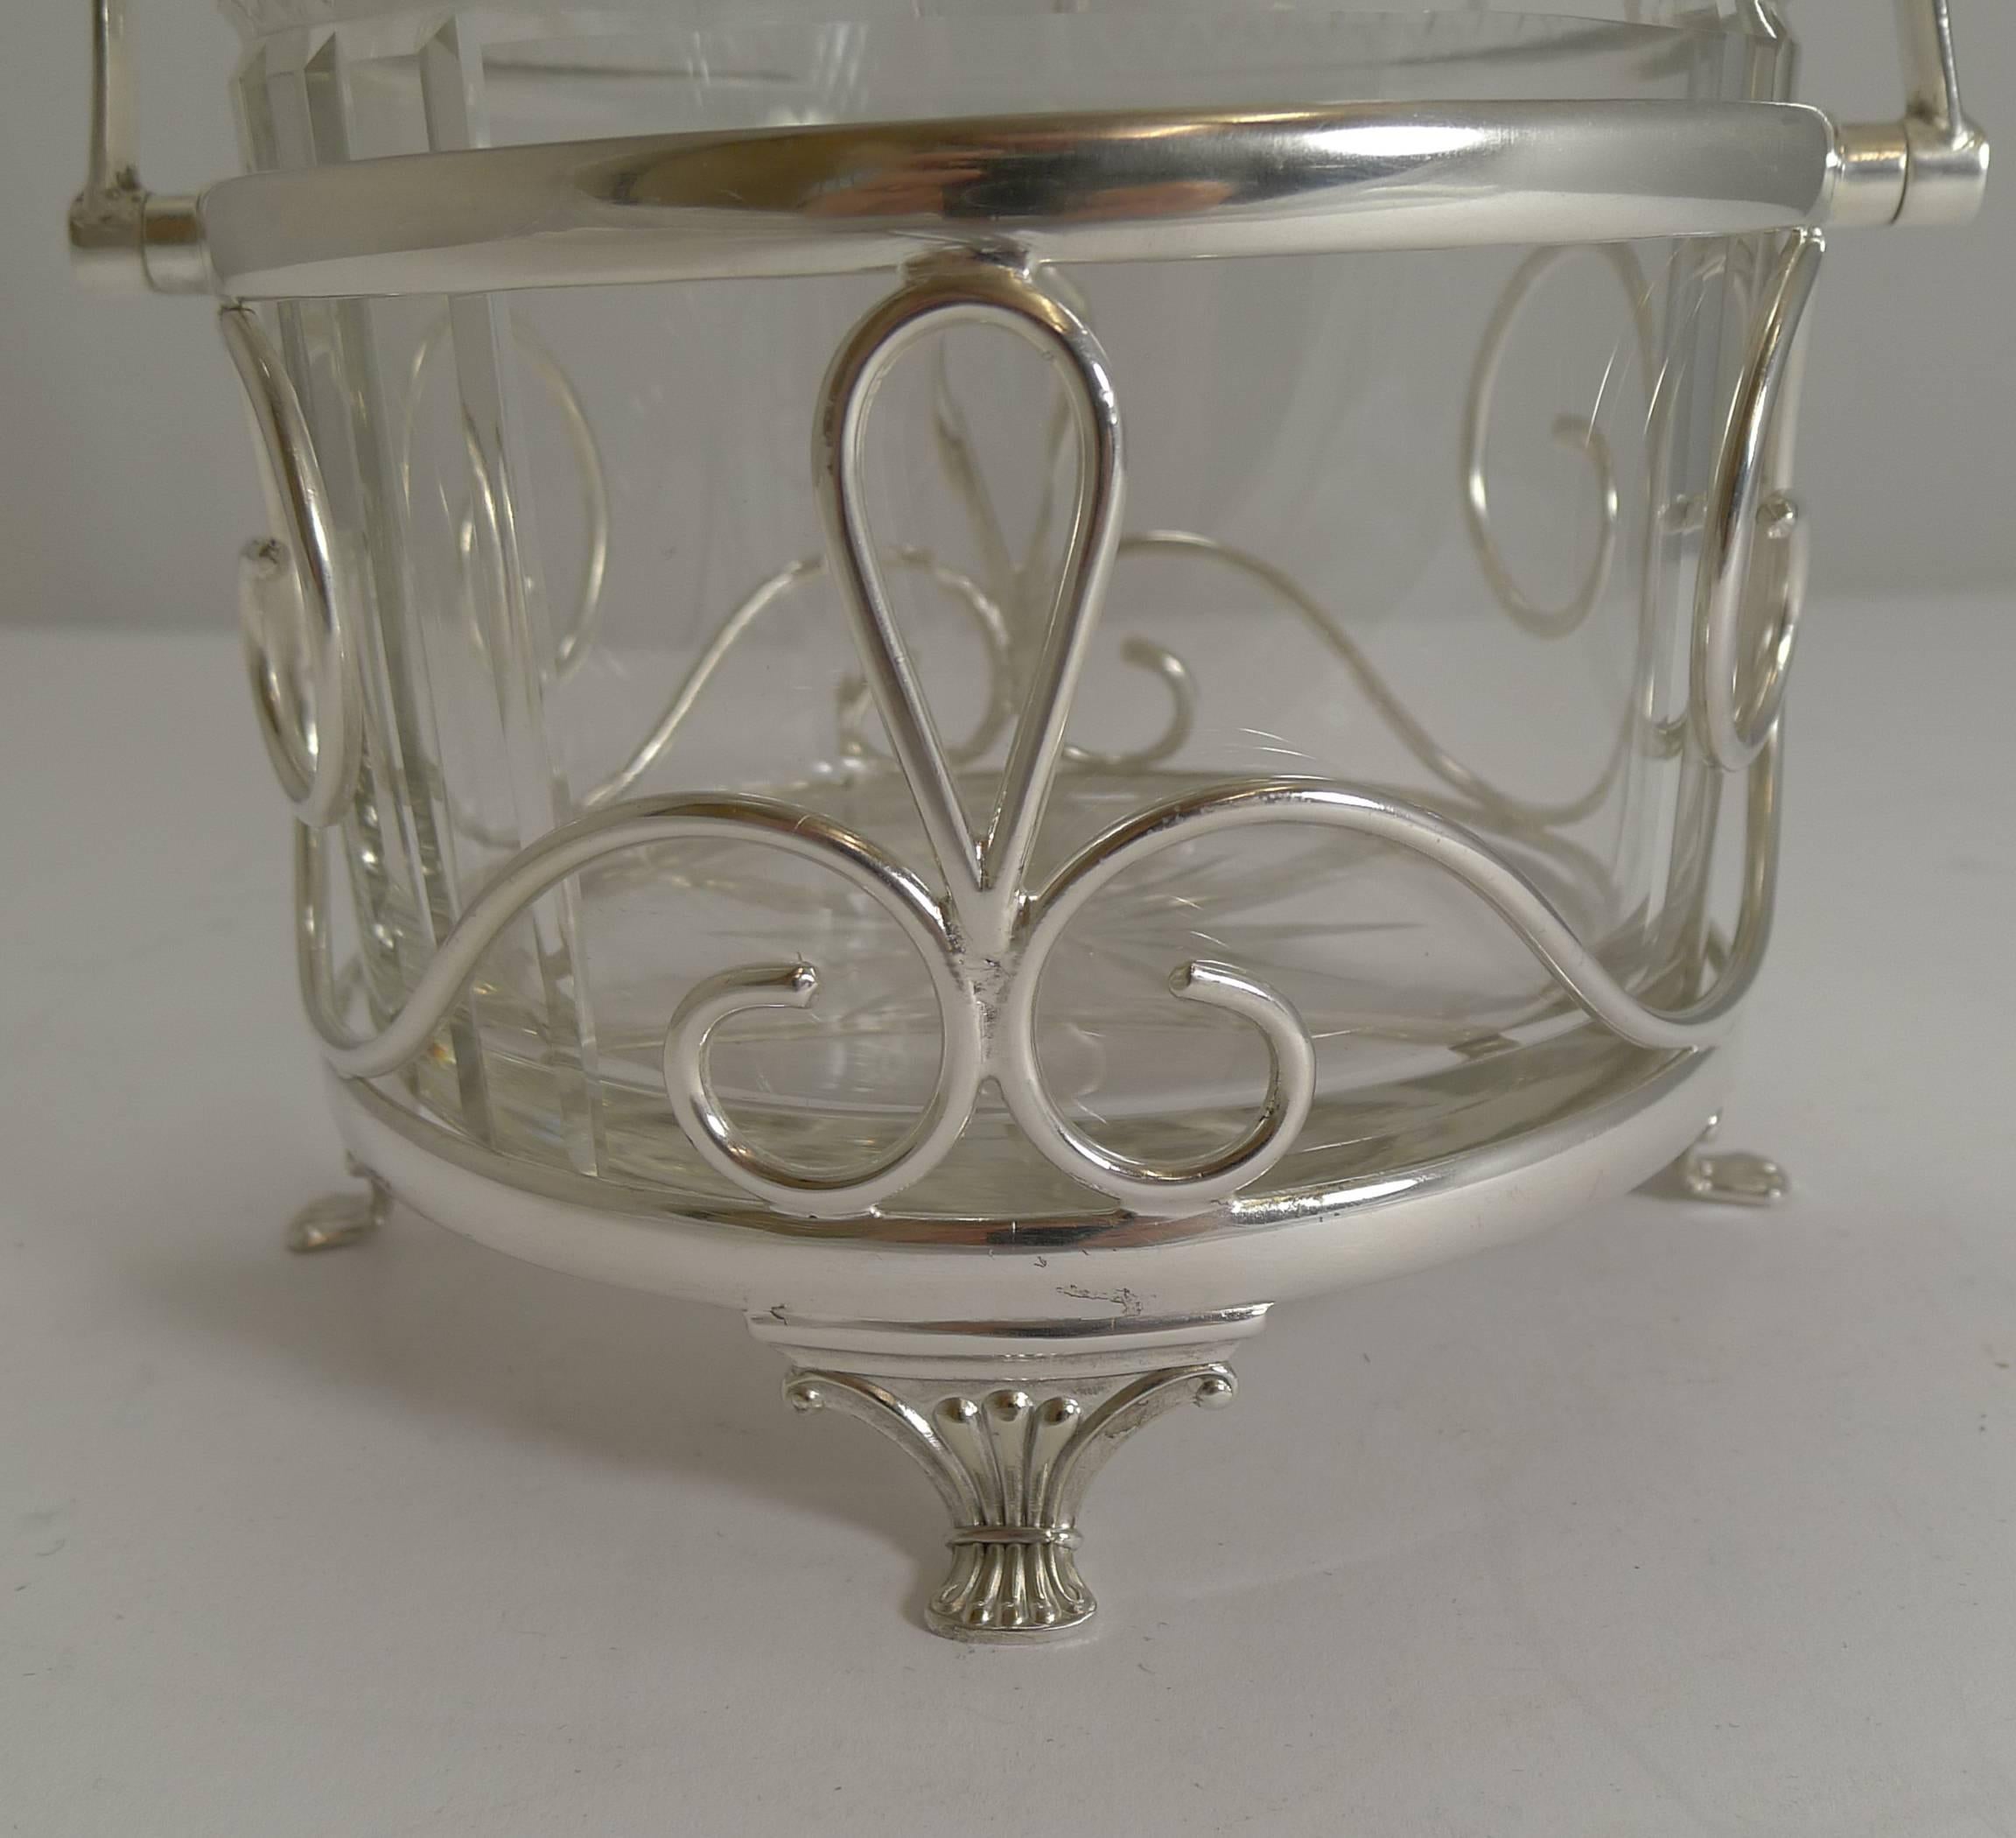 Eine wundervoll dekorative Keksdose, deren Rahmen aus EPNS (Electro-plated nickel silver) besteht und vollständig vom Birminghamer Silberschmied Arnold E. Williams markiert ist. Sie steht auf vier hübschen Füßen.

Die Schachtel selbst ist aus